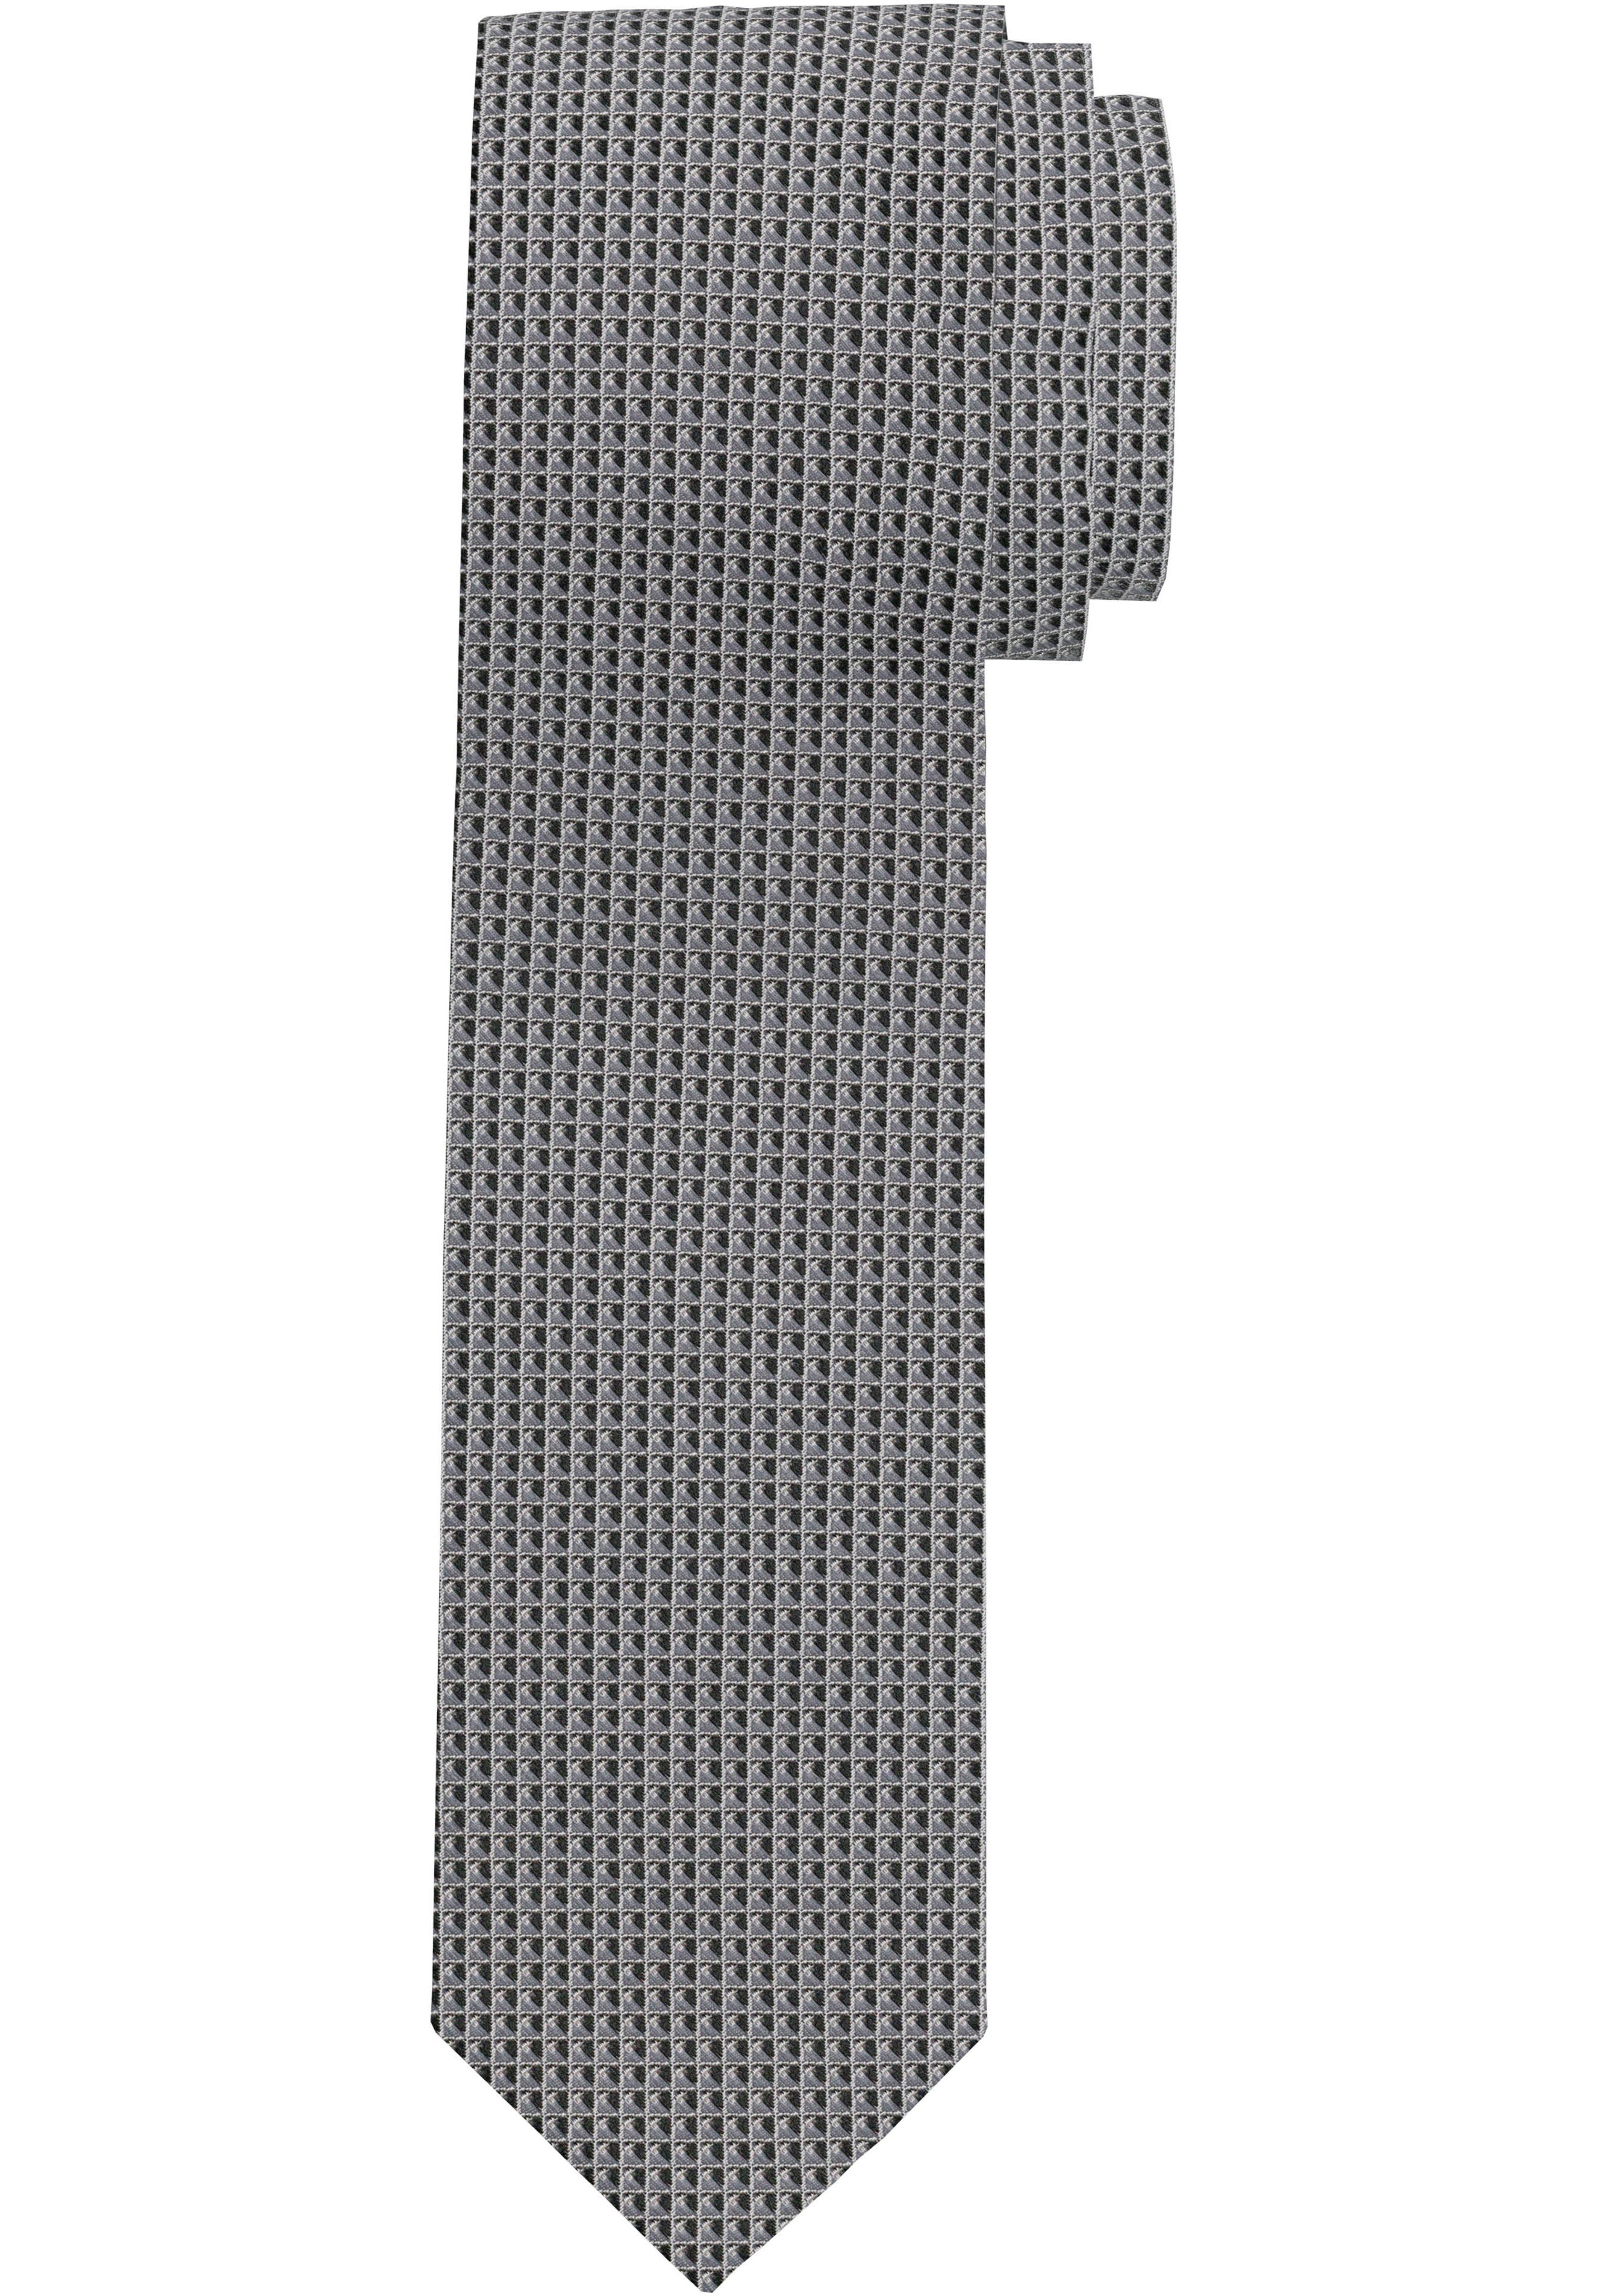 OLYMP Krawatte Strukturierte Krawatte online kaufen | OTTO